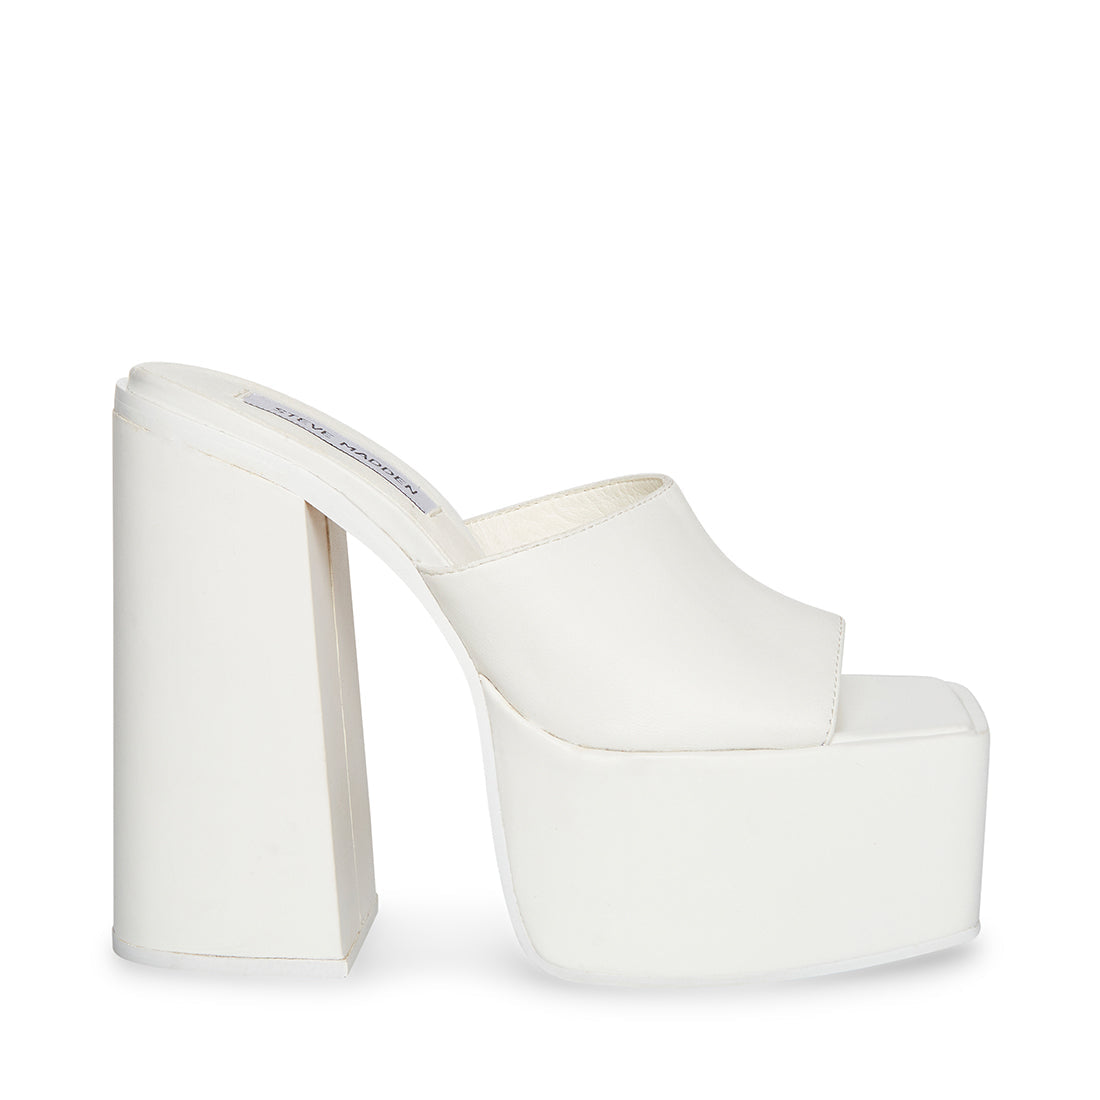 Trixie Sandal White Leather